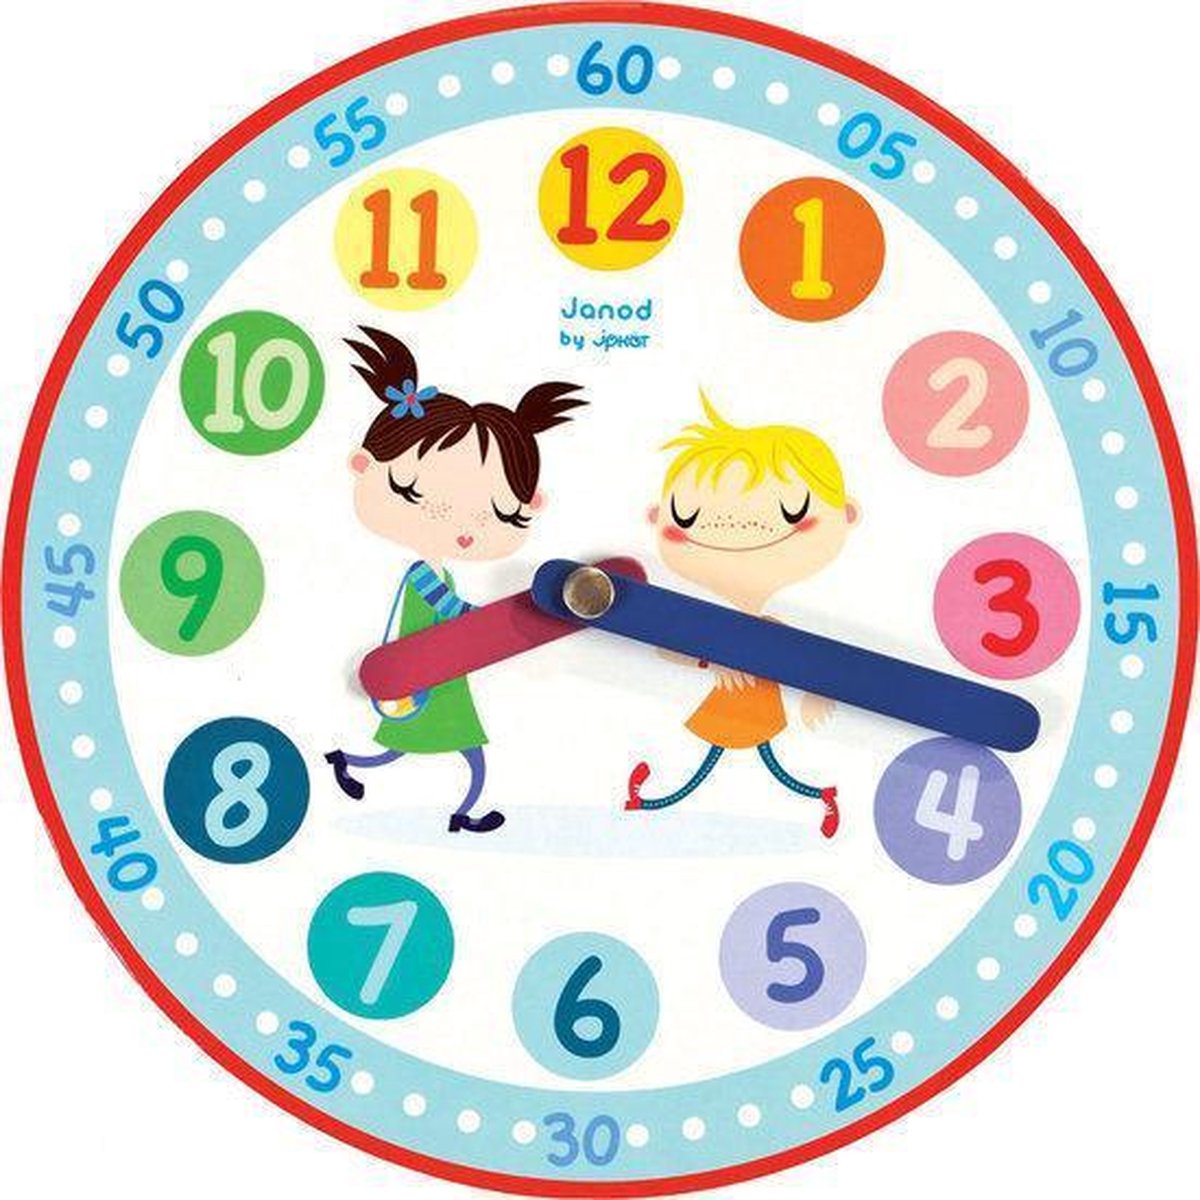 разные часы картинки для детей